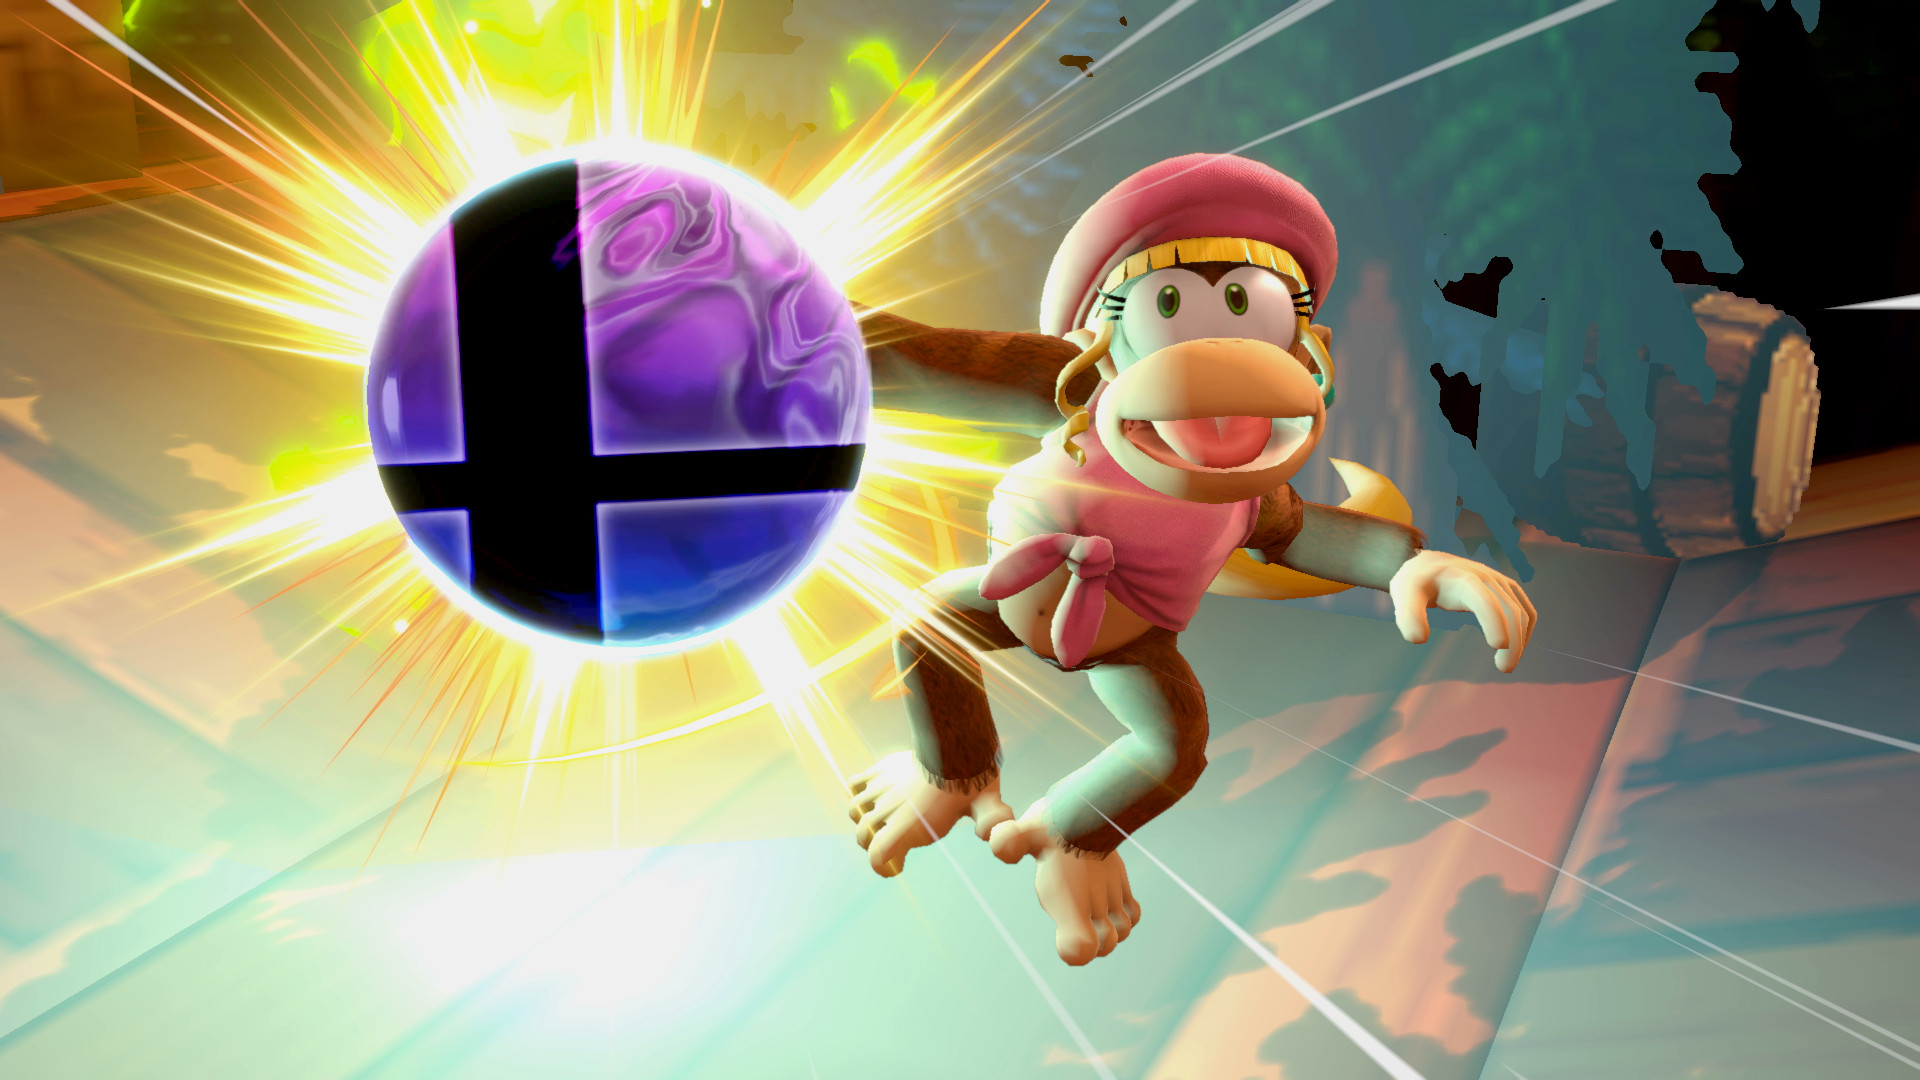 A Mod for Super Smash Bros. 